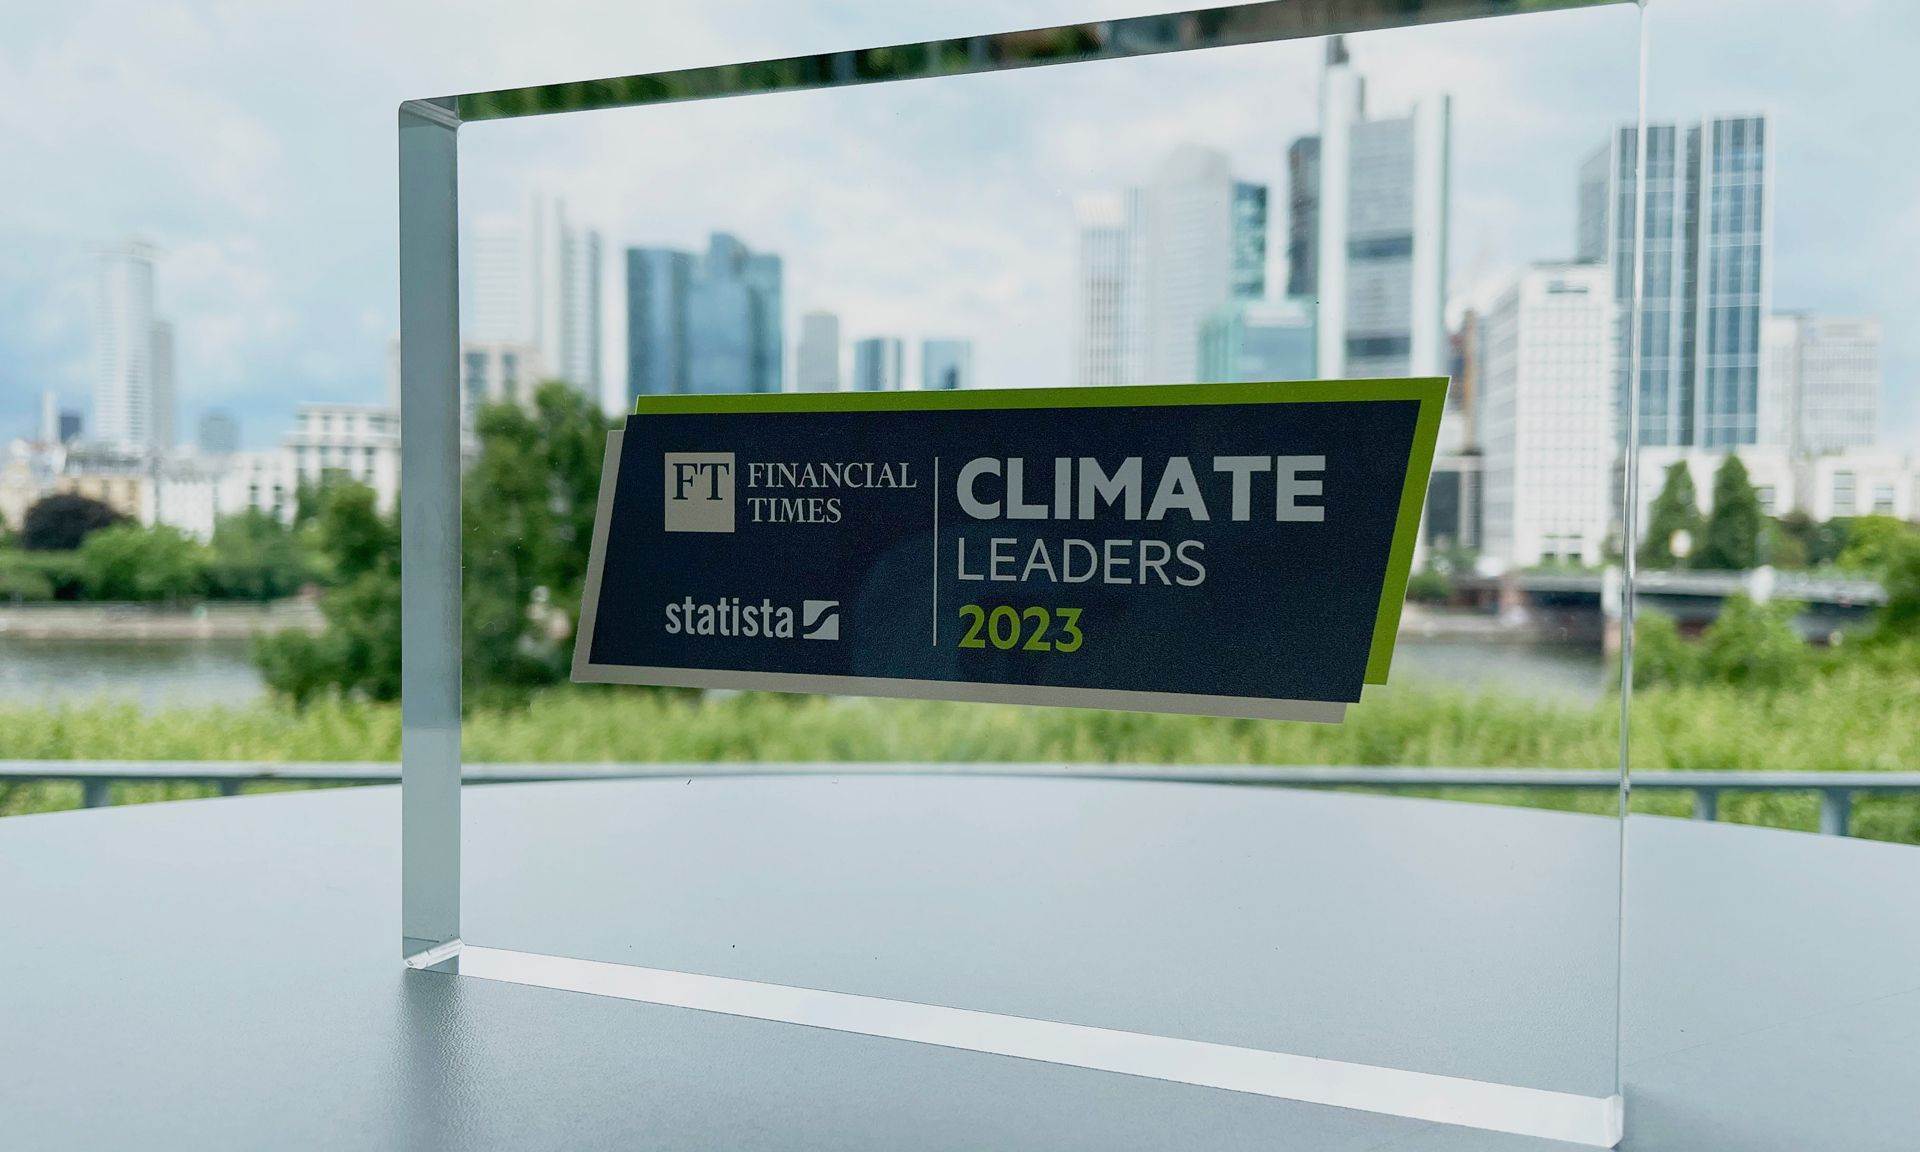 Bild von dem Europe's Climate Leader Award.